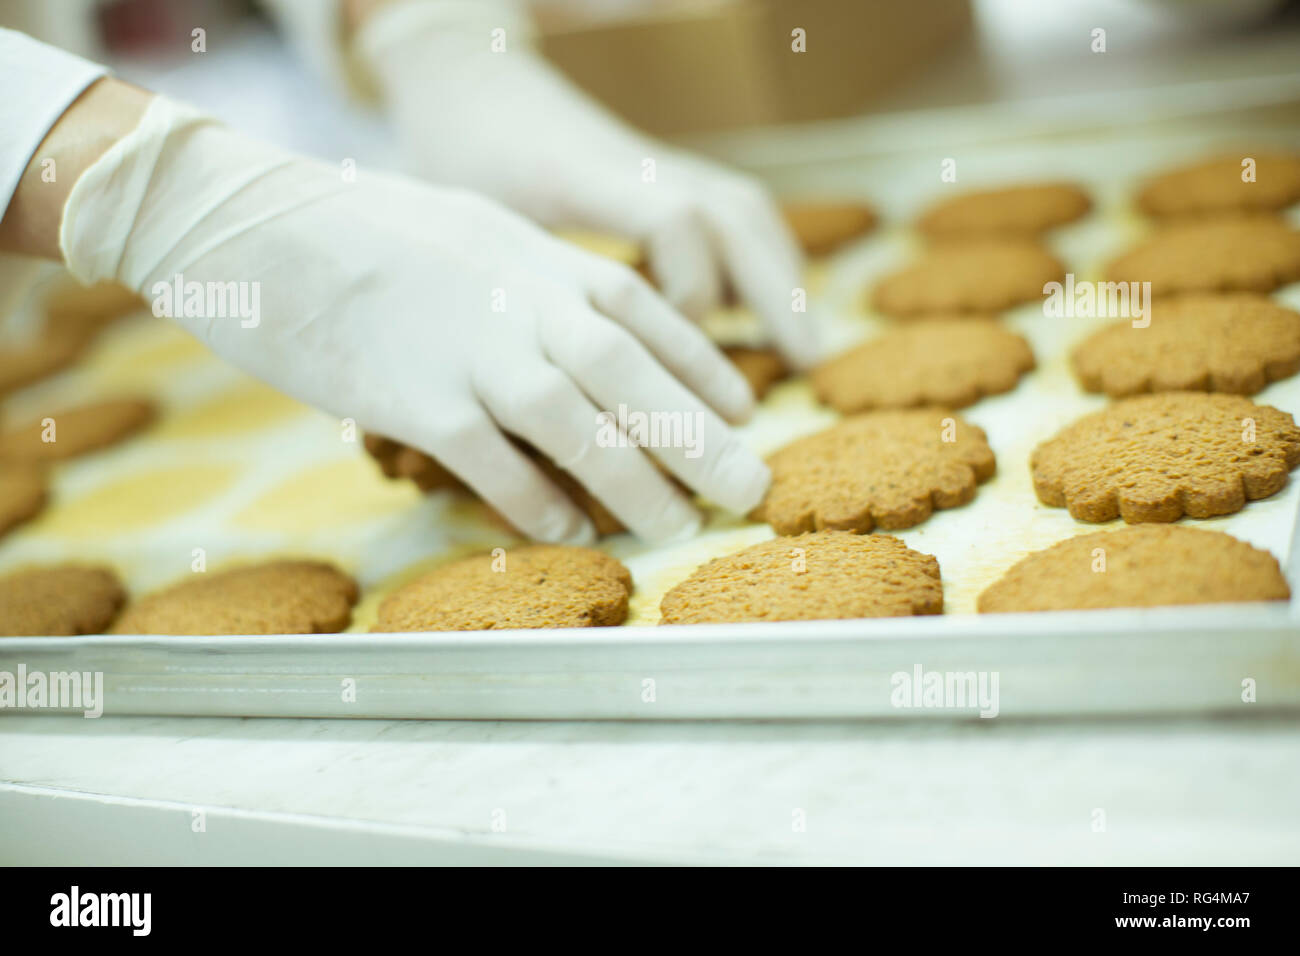 In Schutzkleidung Workier arbeiten in den cookies Factory Stockfoto